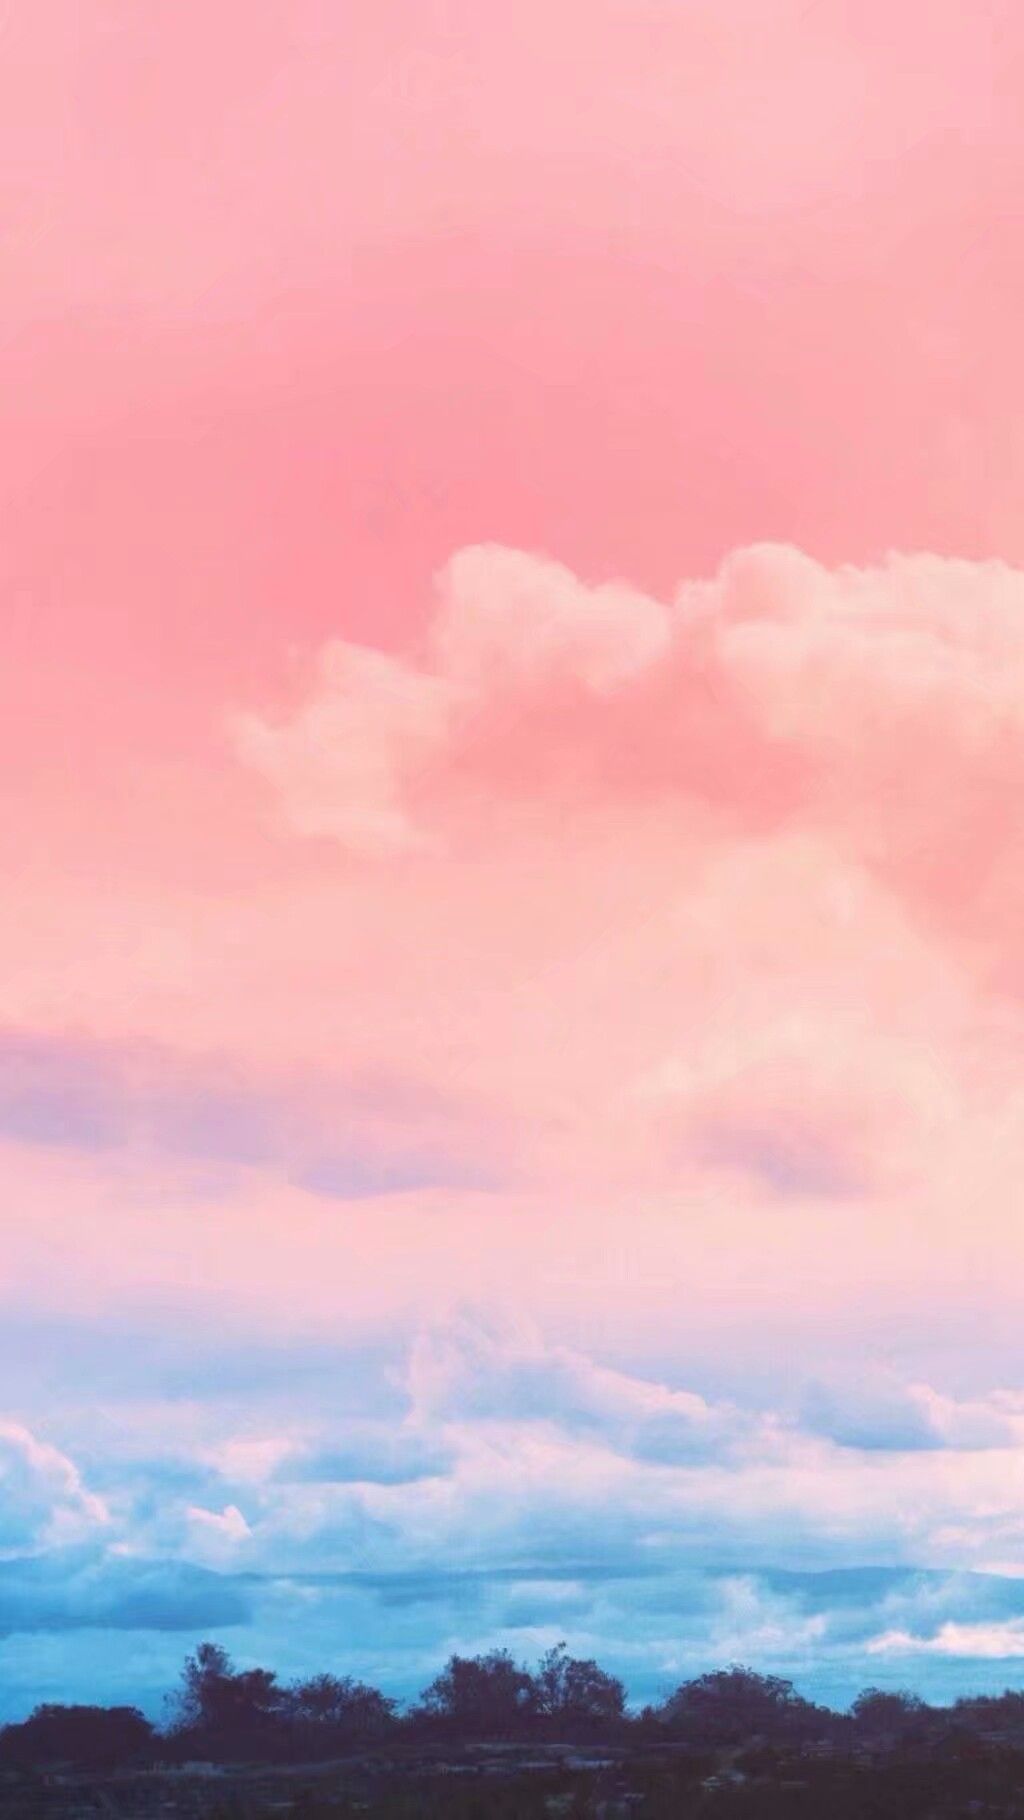 原宿风壁纸 粉色系图片